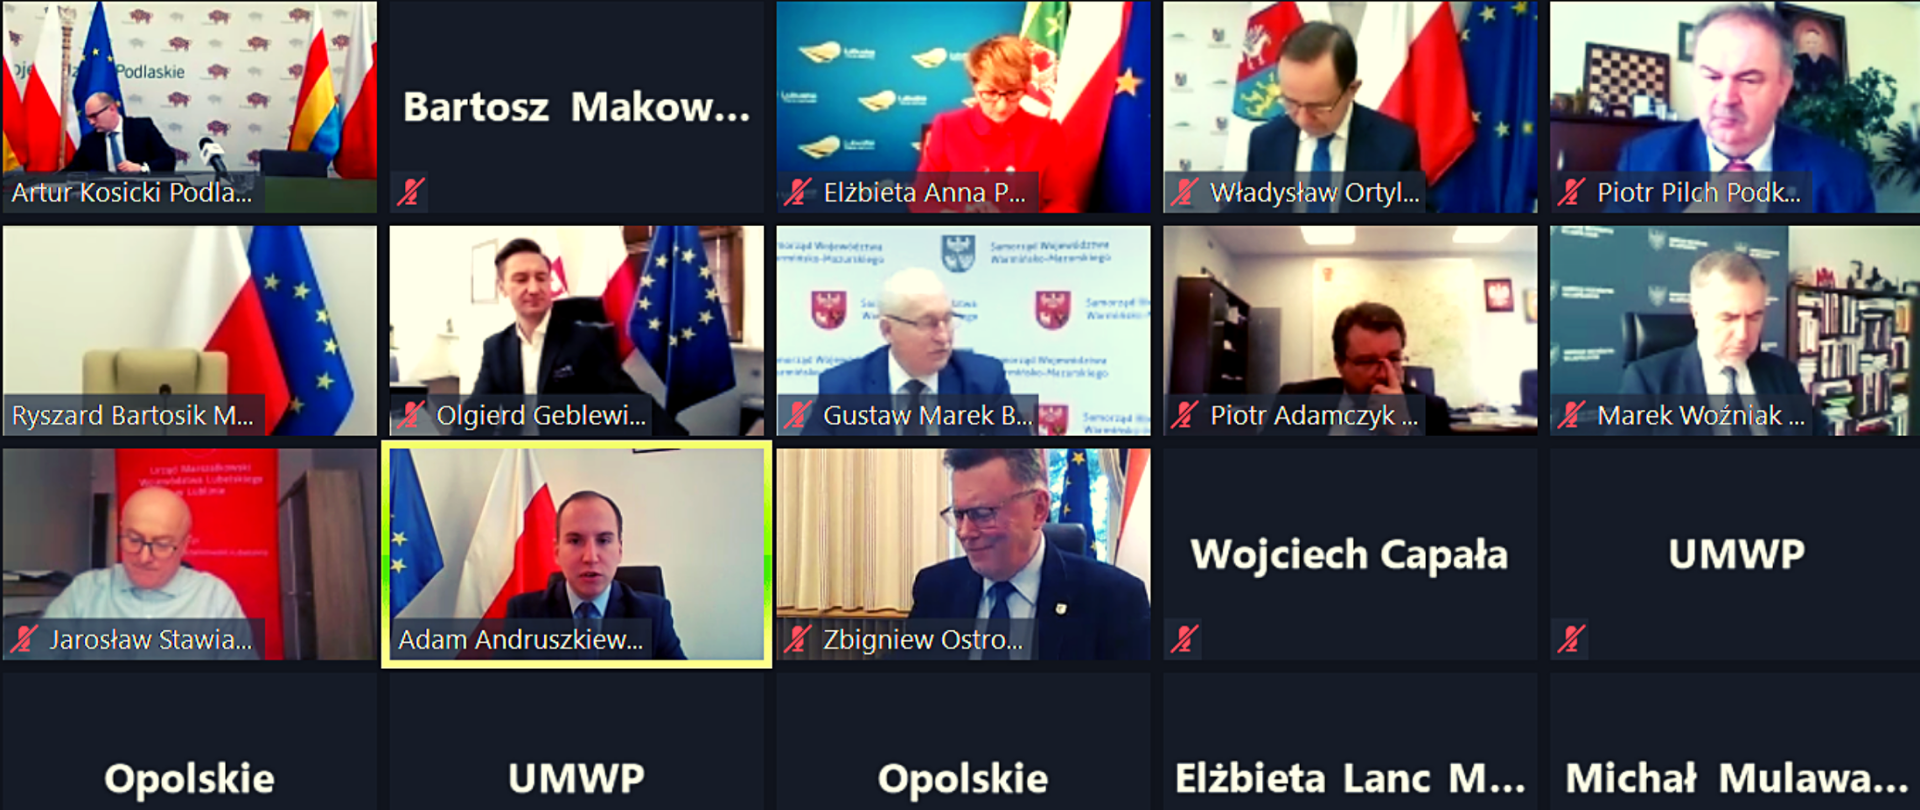 Widok (zrzut) ekranu komputera, na którym widoczni są wszyscy uczestnicy spotkania - Konwentu Marszałków Województw RP. Wśród nich minister Adam Andruszkiewicz.